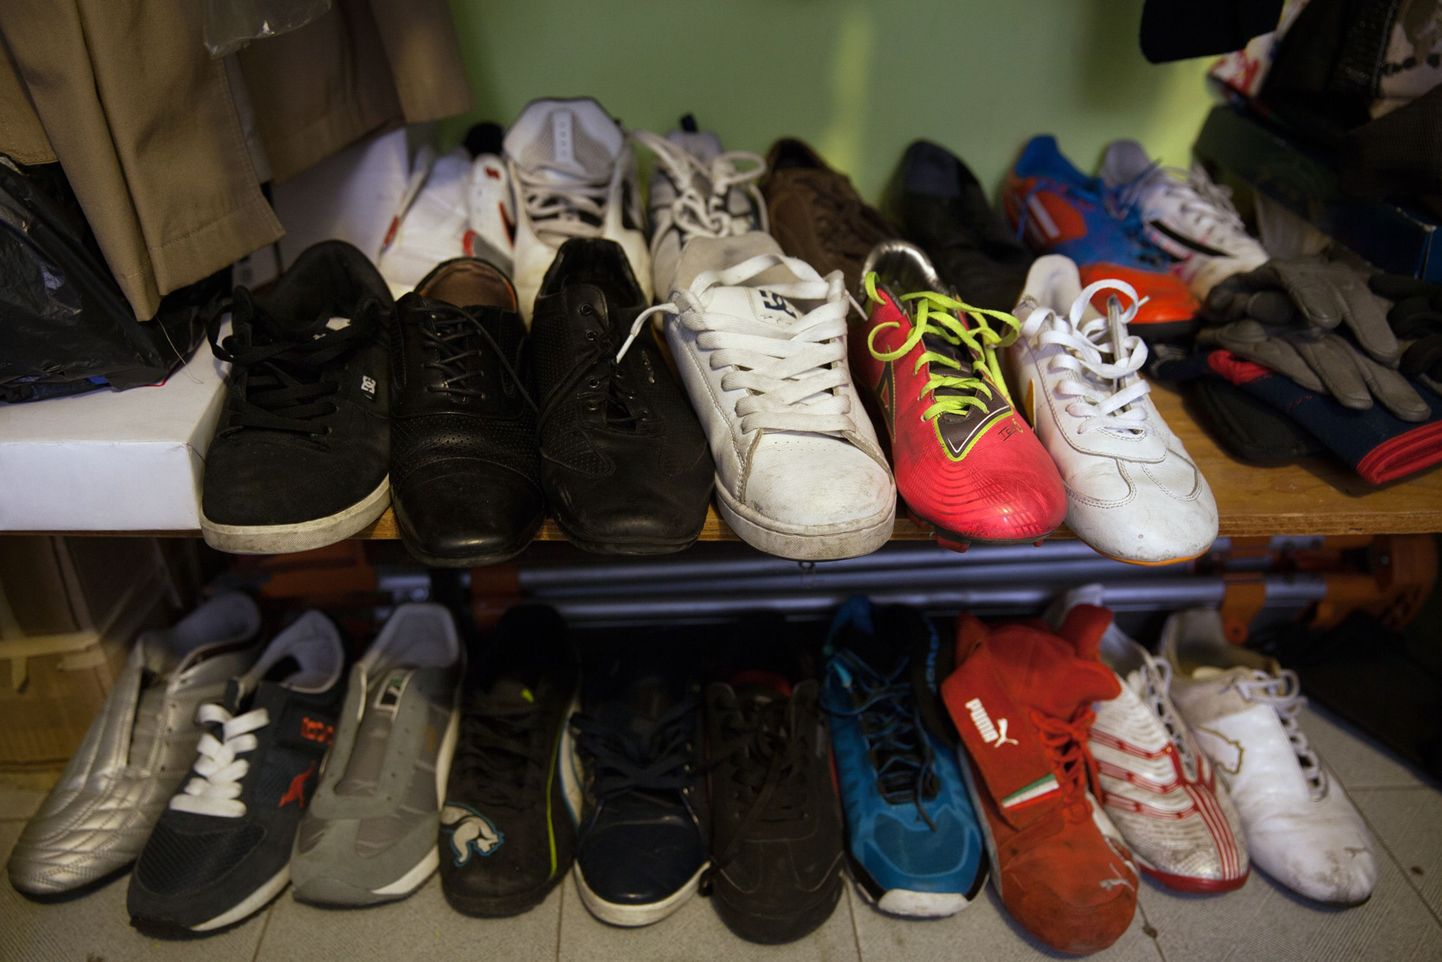 Mehe kodust leiti tuhandeid kasutatud jalatseid.